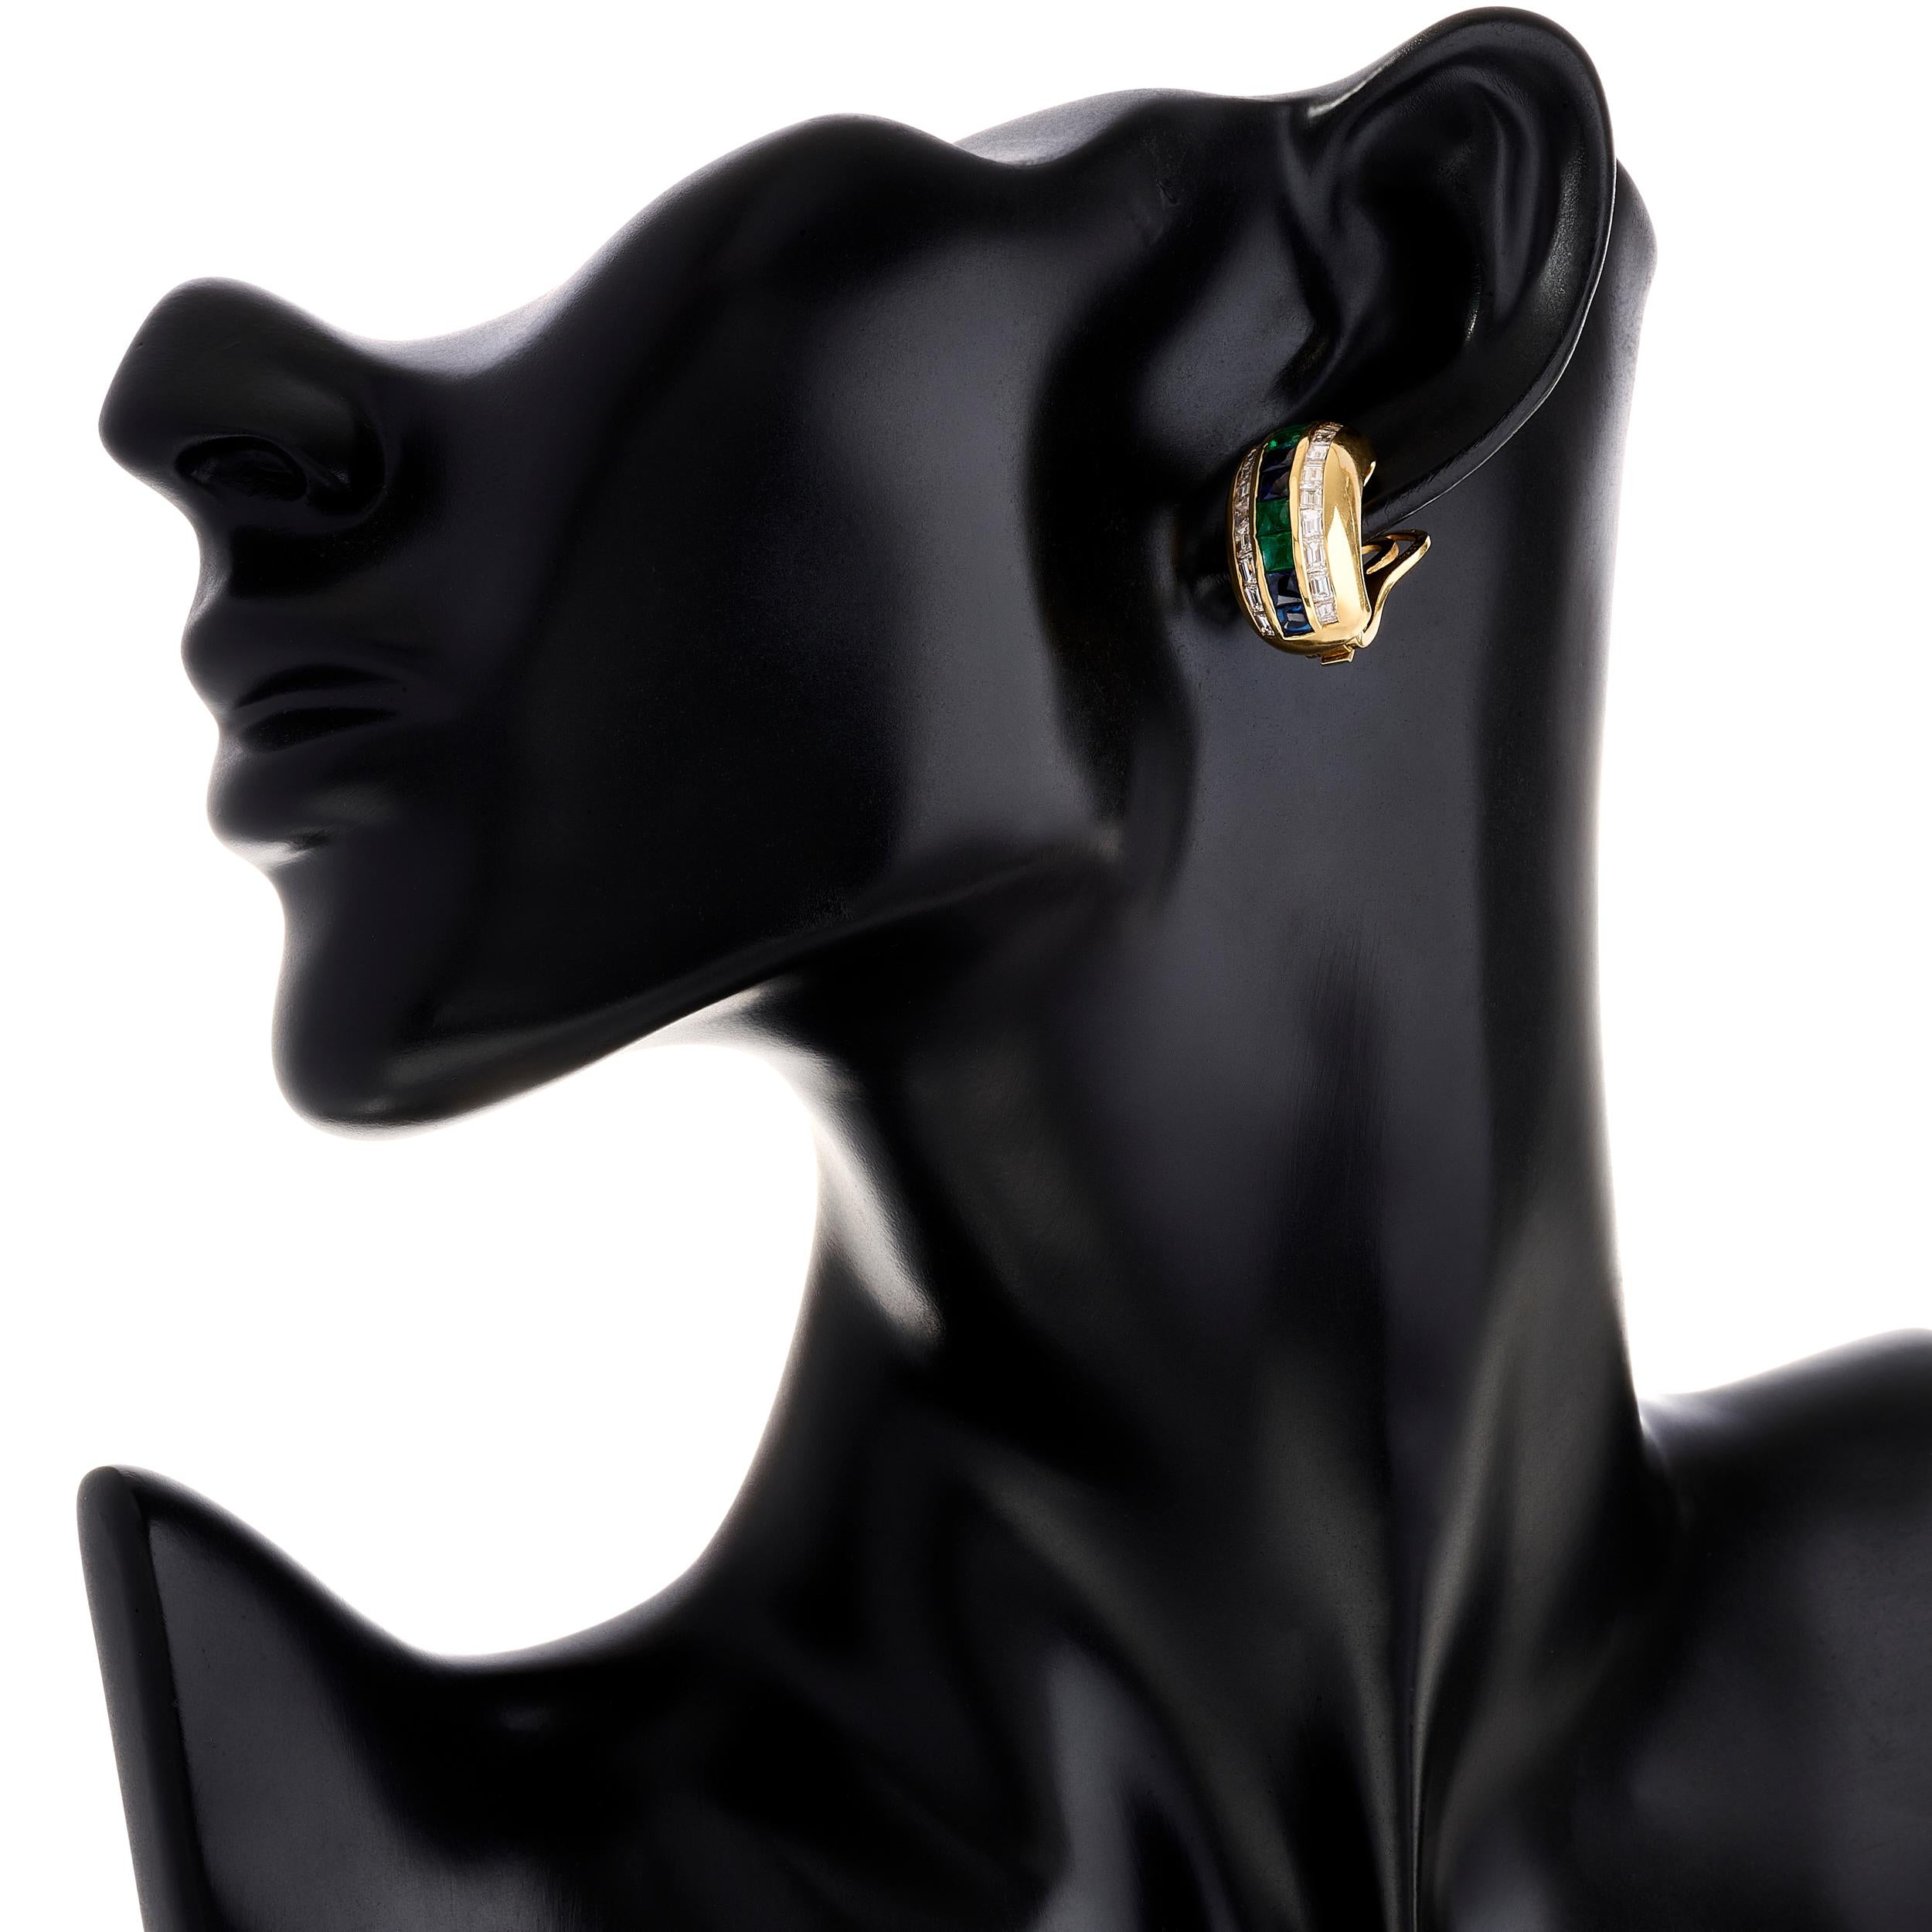 Diese Bvlgari-Ohrringe bestechen durch eine Symphonie von Diamanten und eine Reihe von abwechselnden Smaragden und Saphiren.

Es gibt 12 quadratische buff top Saphire, die etwa 2,00 Karat wiegen.
Es gibt 8 quadratische buff top Smaragde, die etwa